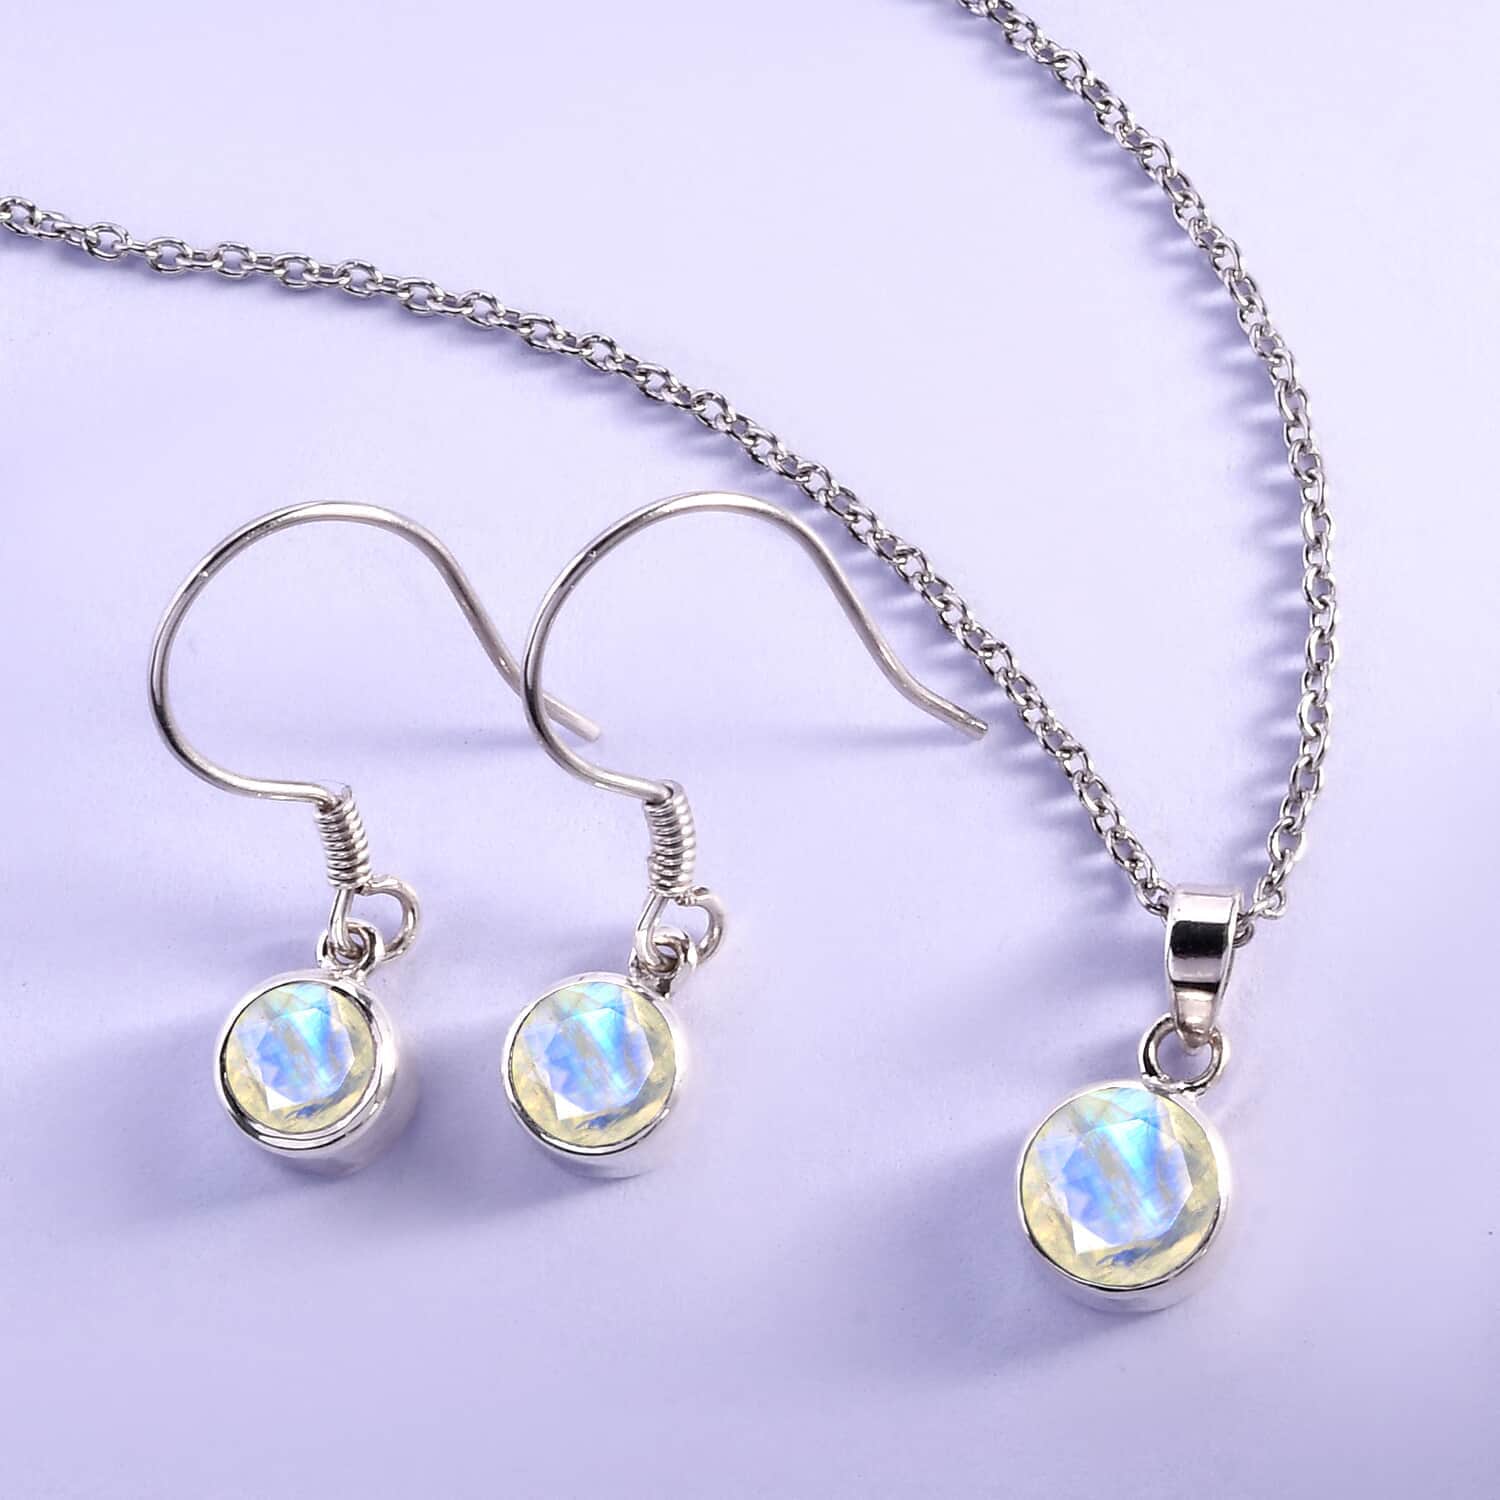 Genuine grey moonstone crystal earrings - Vinted